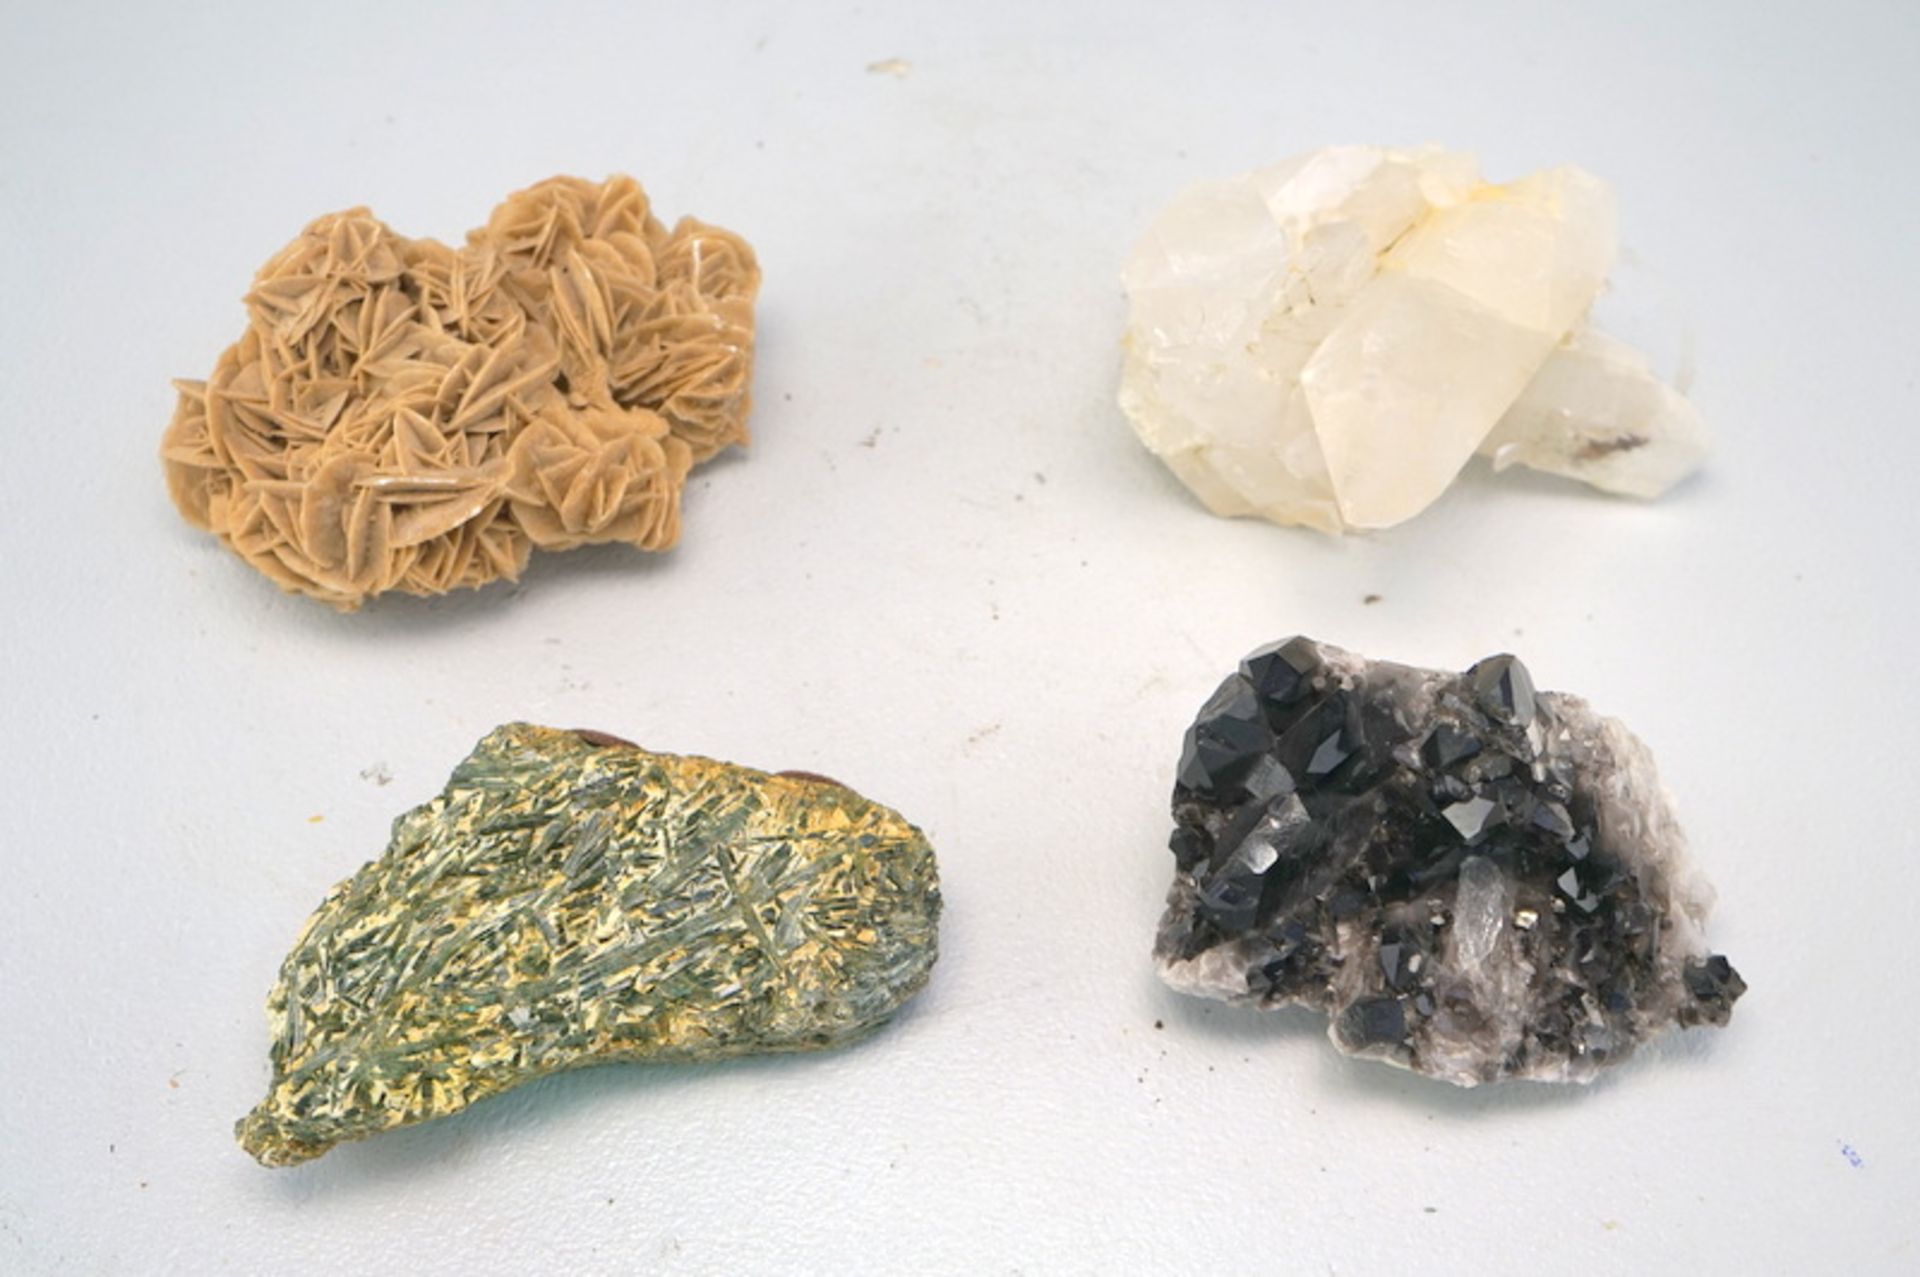 Sammlung von sieben Mineralien